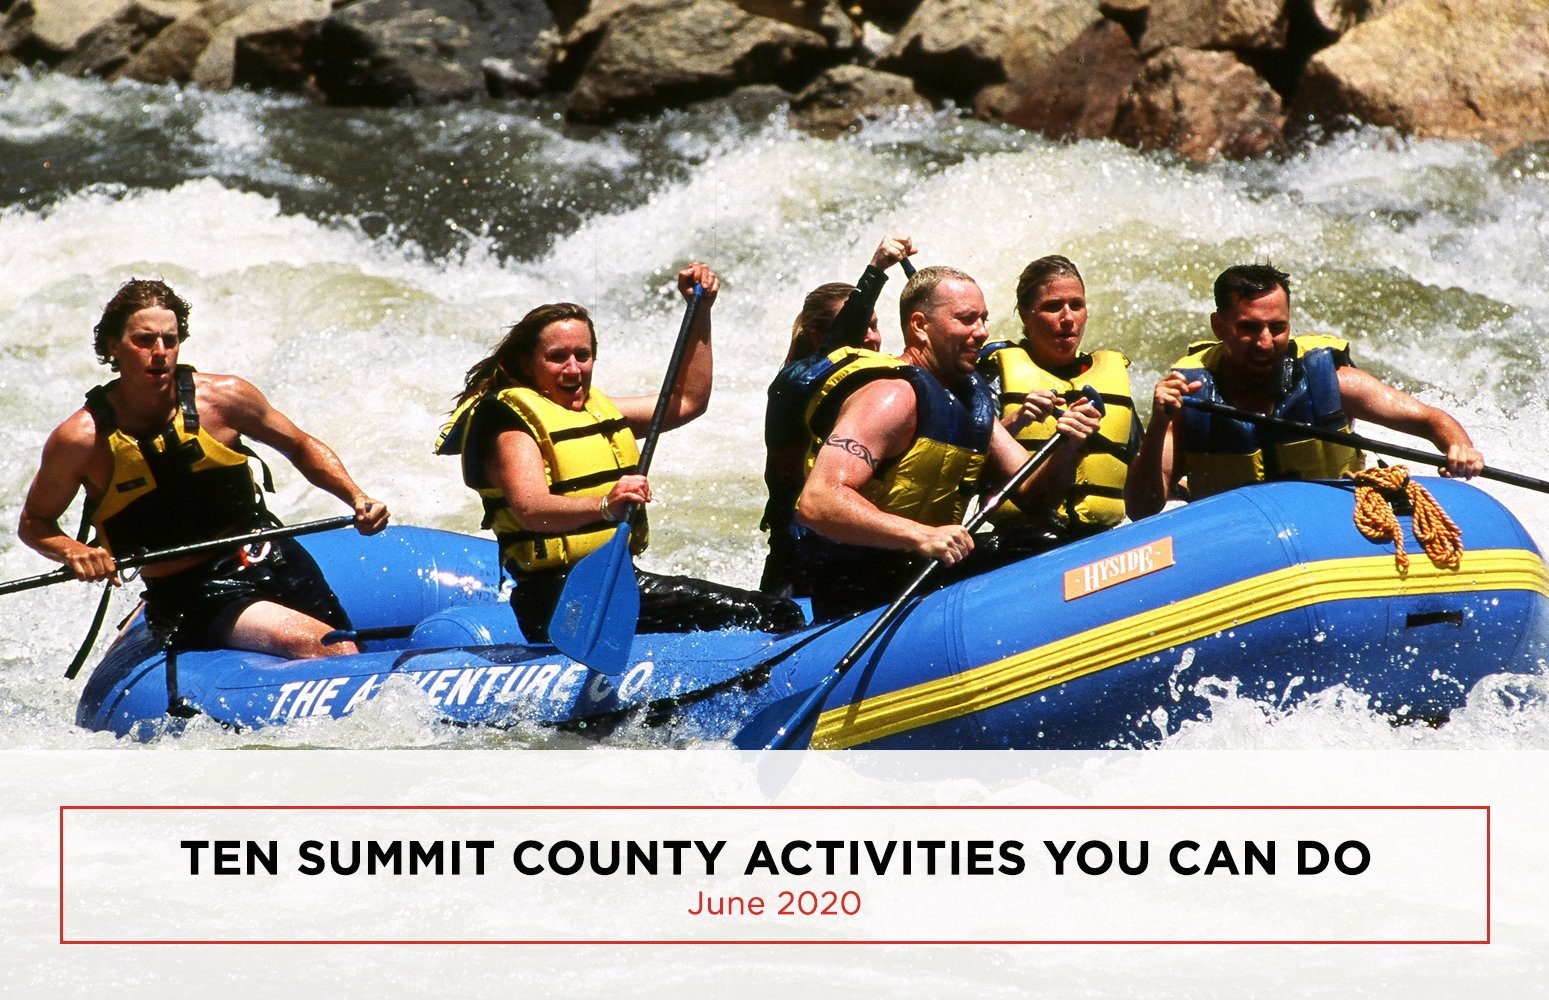 Ten Summit County Activities You Can Do in June 2020